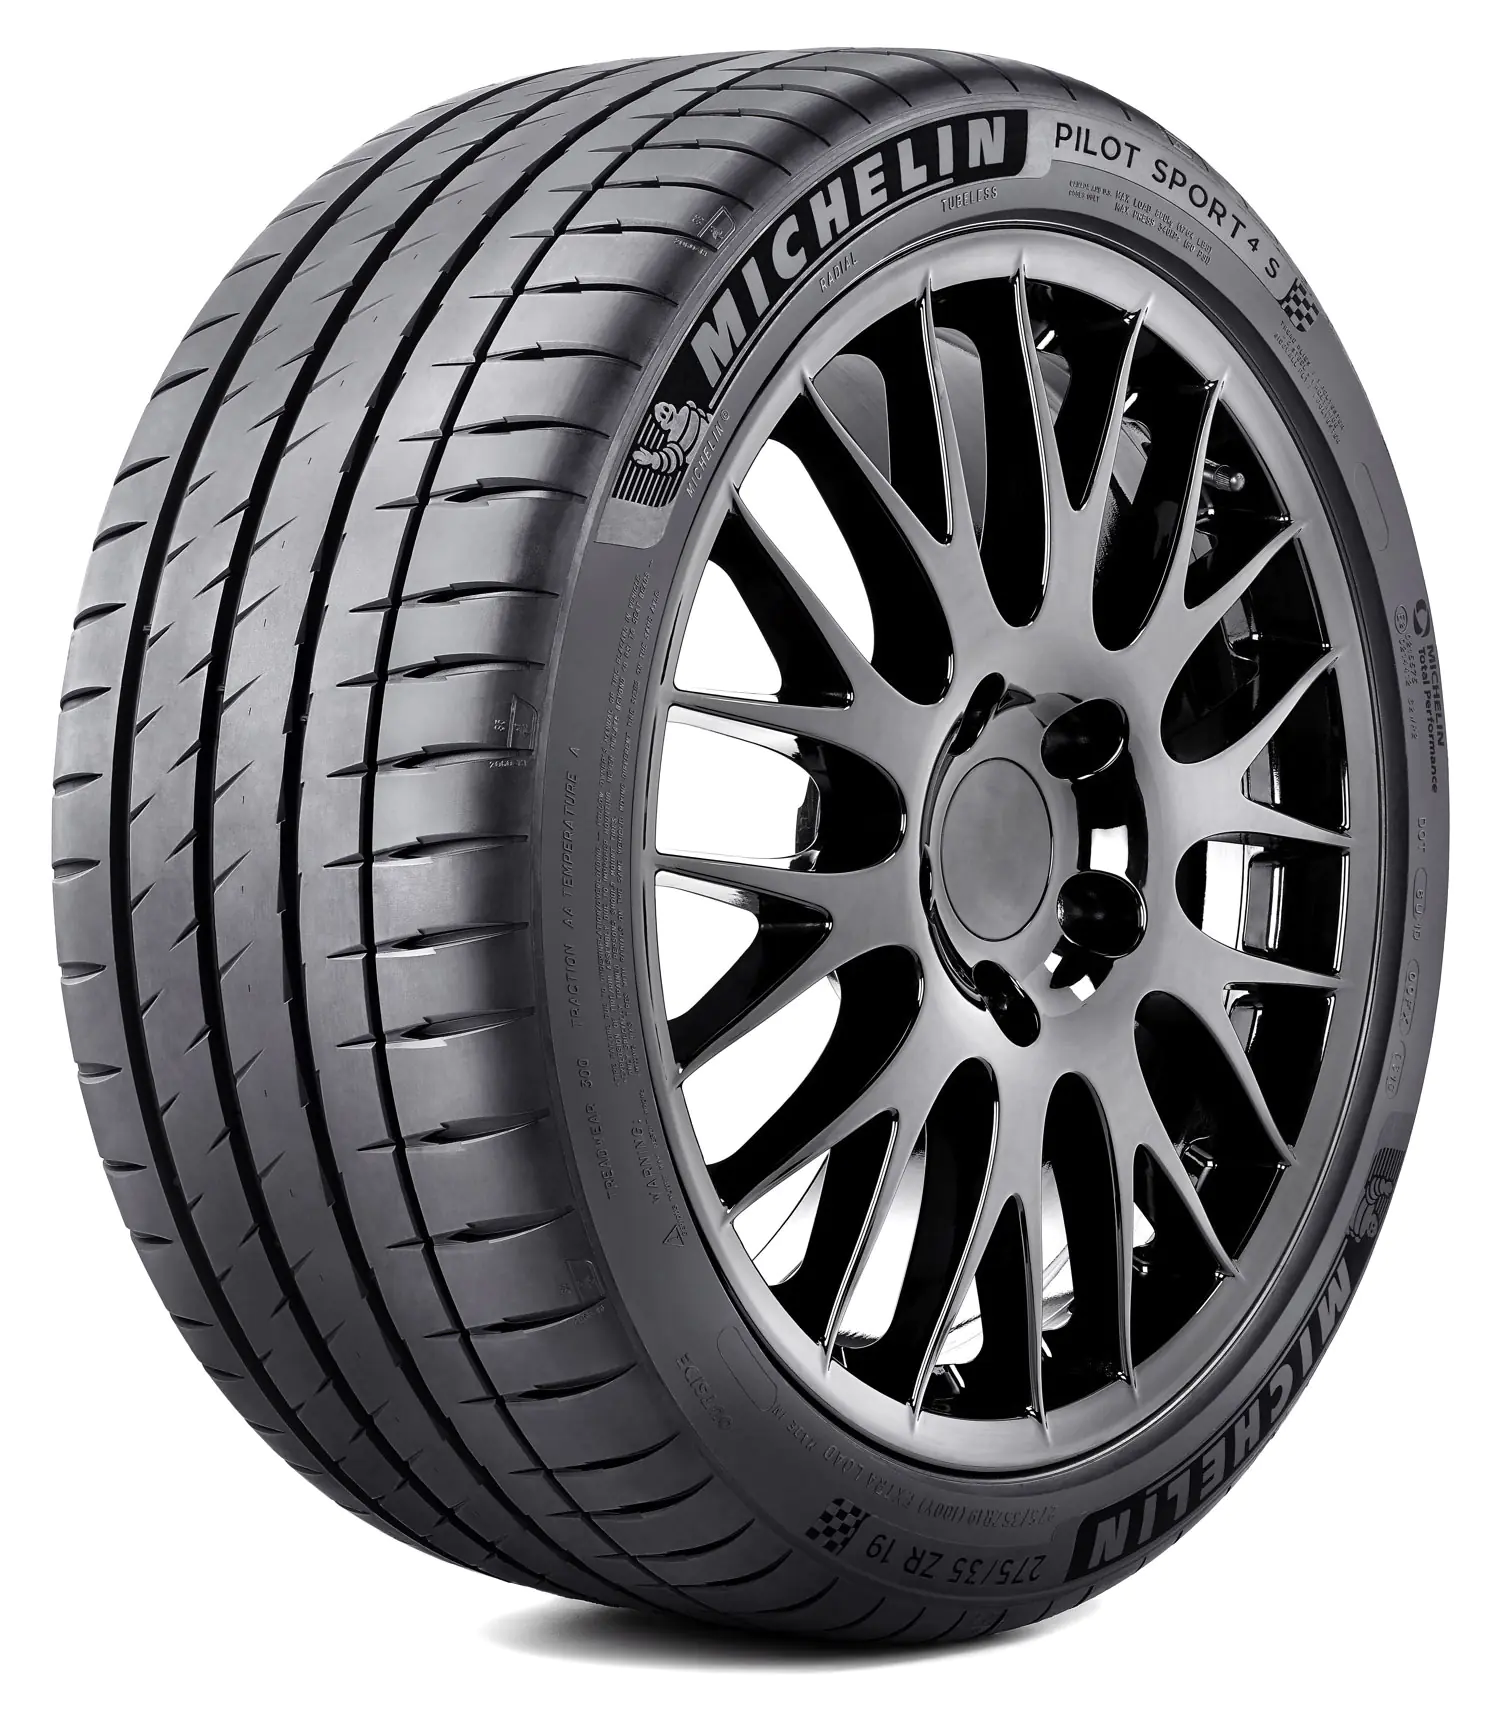 Michelin Michelin 265/35 R19 98Y Pilotsport4s XL pneumatici nuovi Estivo 